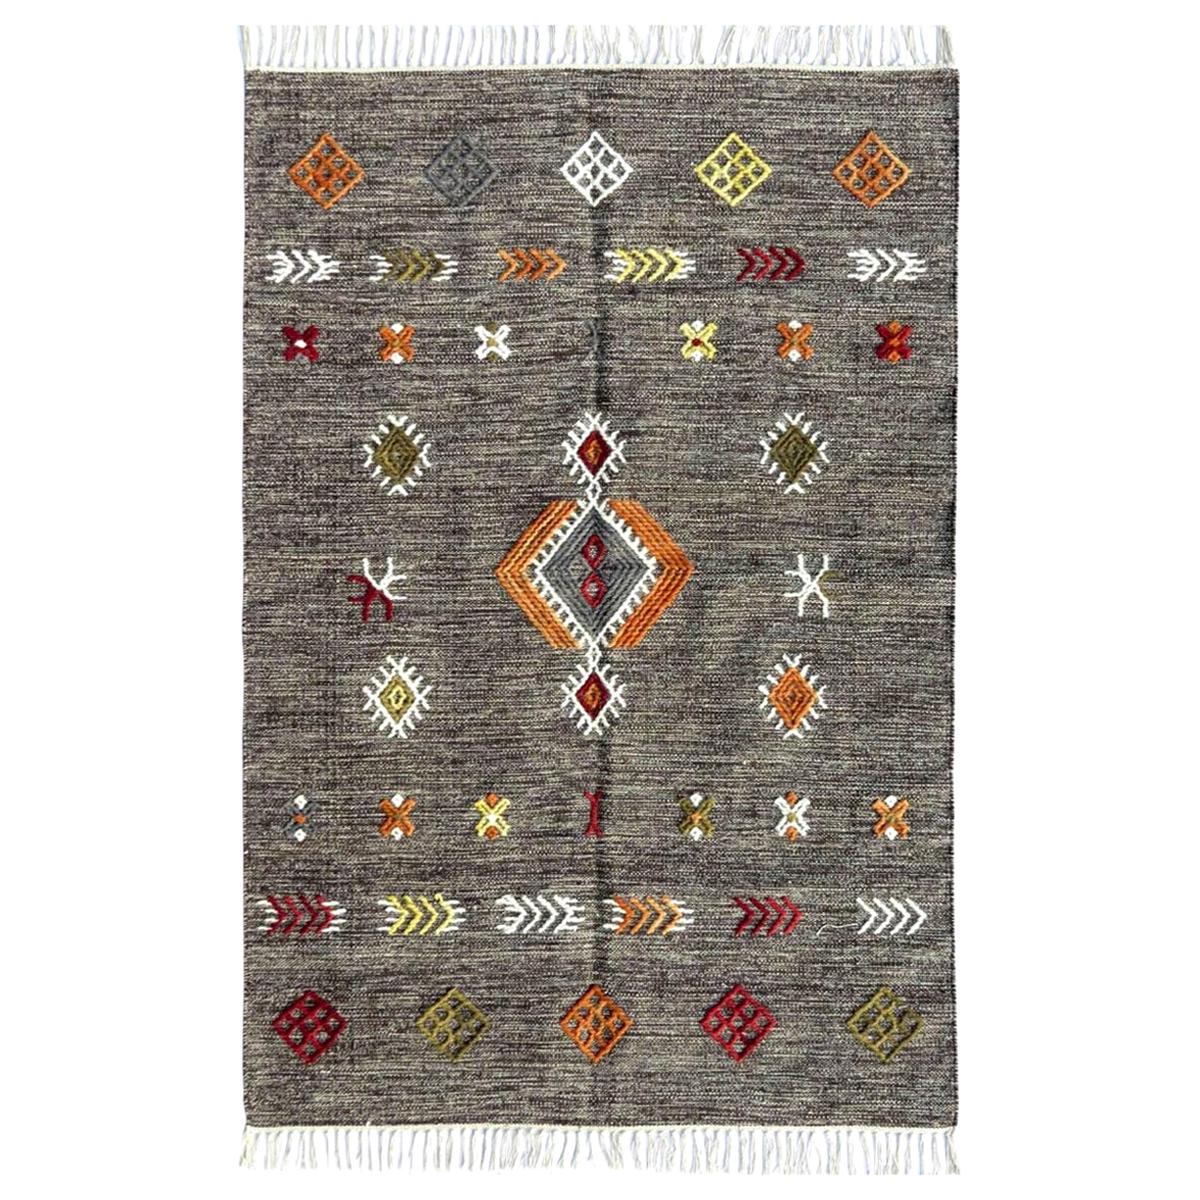 Magnifique tapis Kilim marocain à motifs tribaux tissé à la main